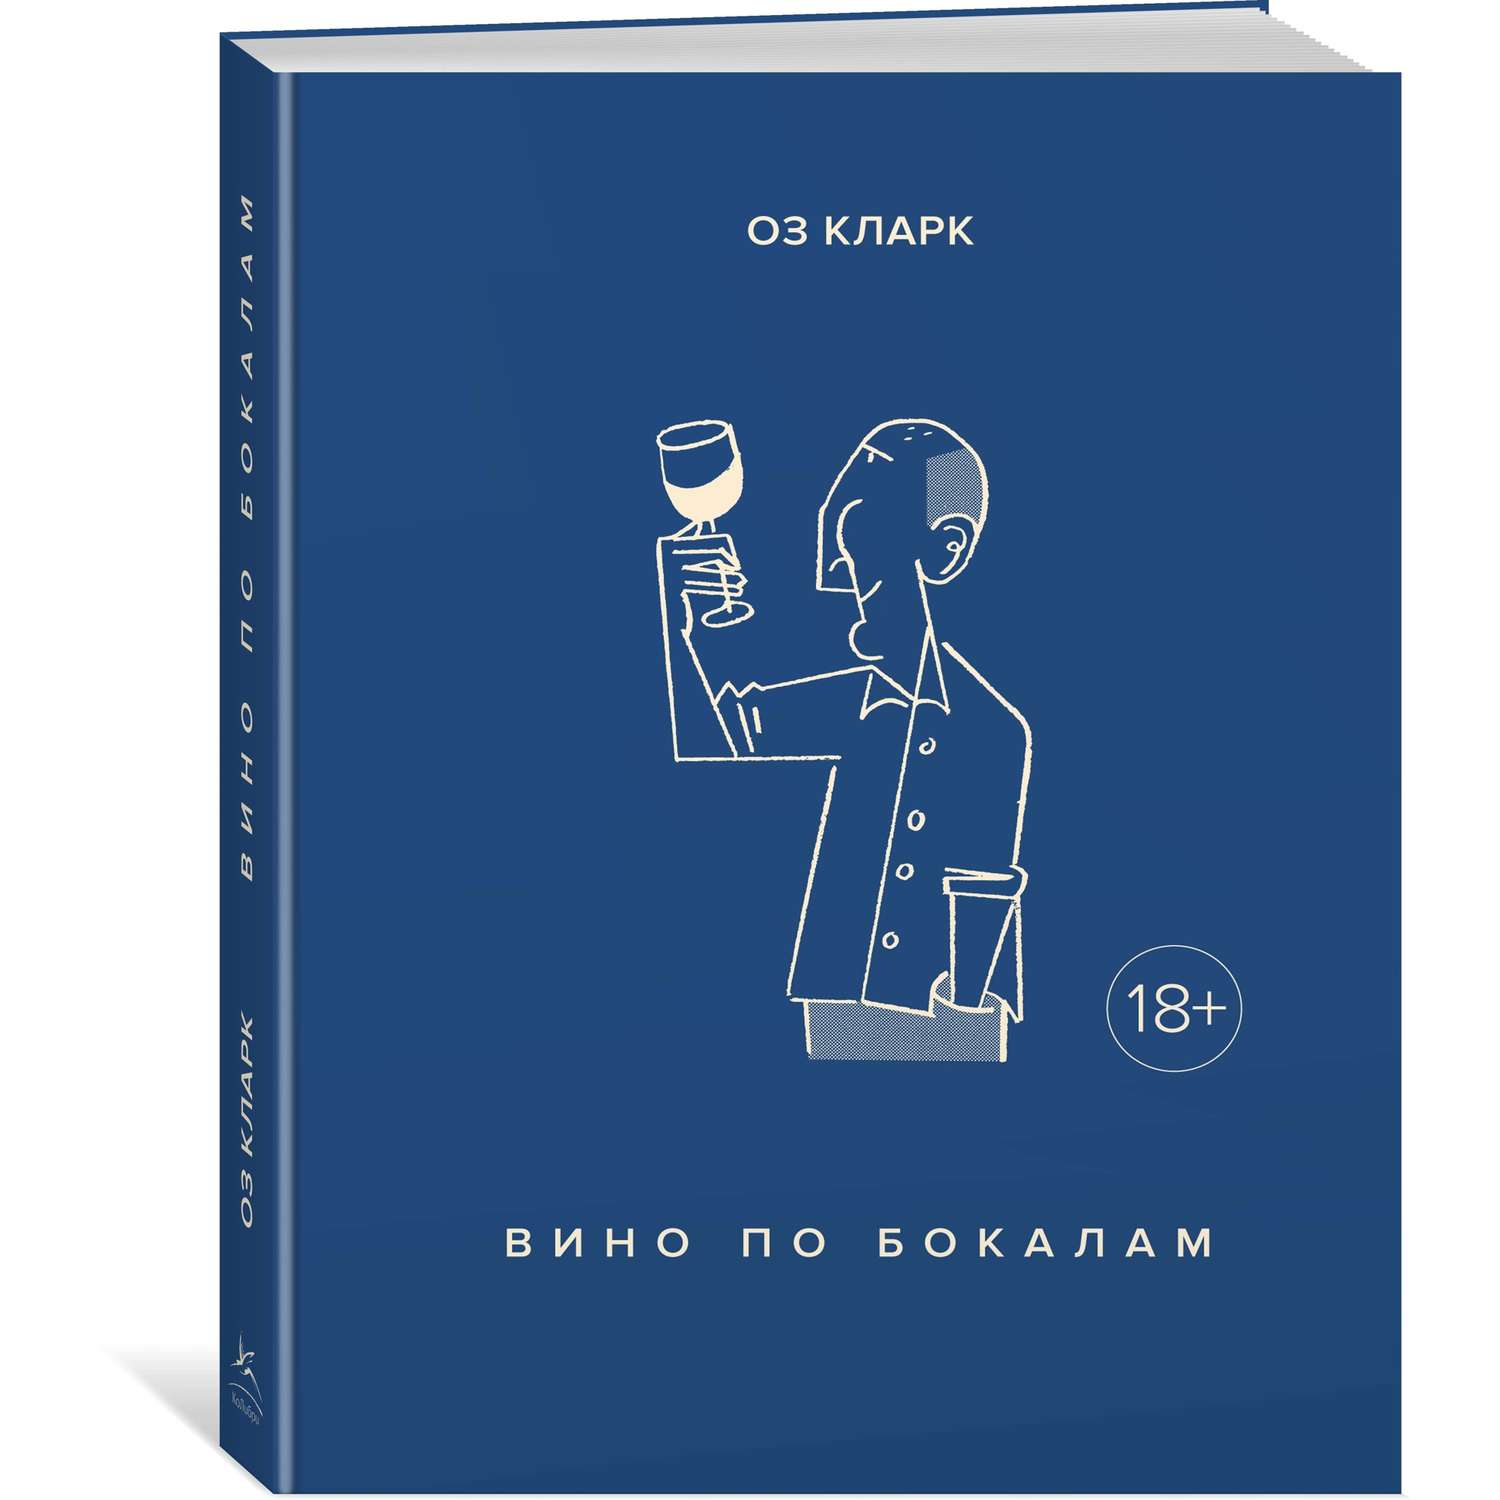 Книга КОЛИБРИ Вино по бокалам Кларк О. Серия: Высокая кухня - фото 2